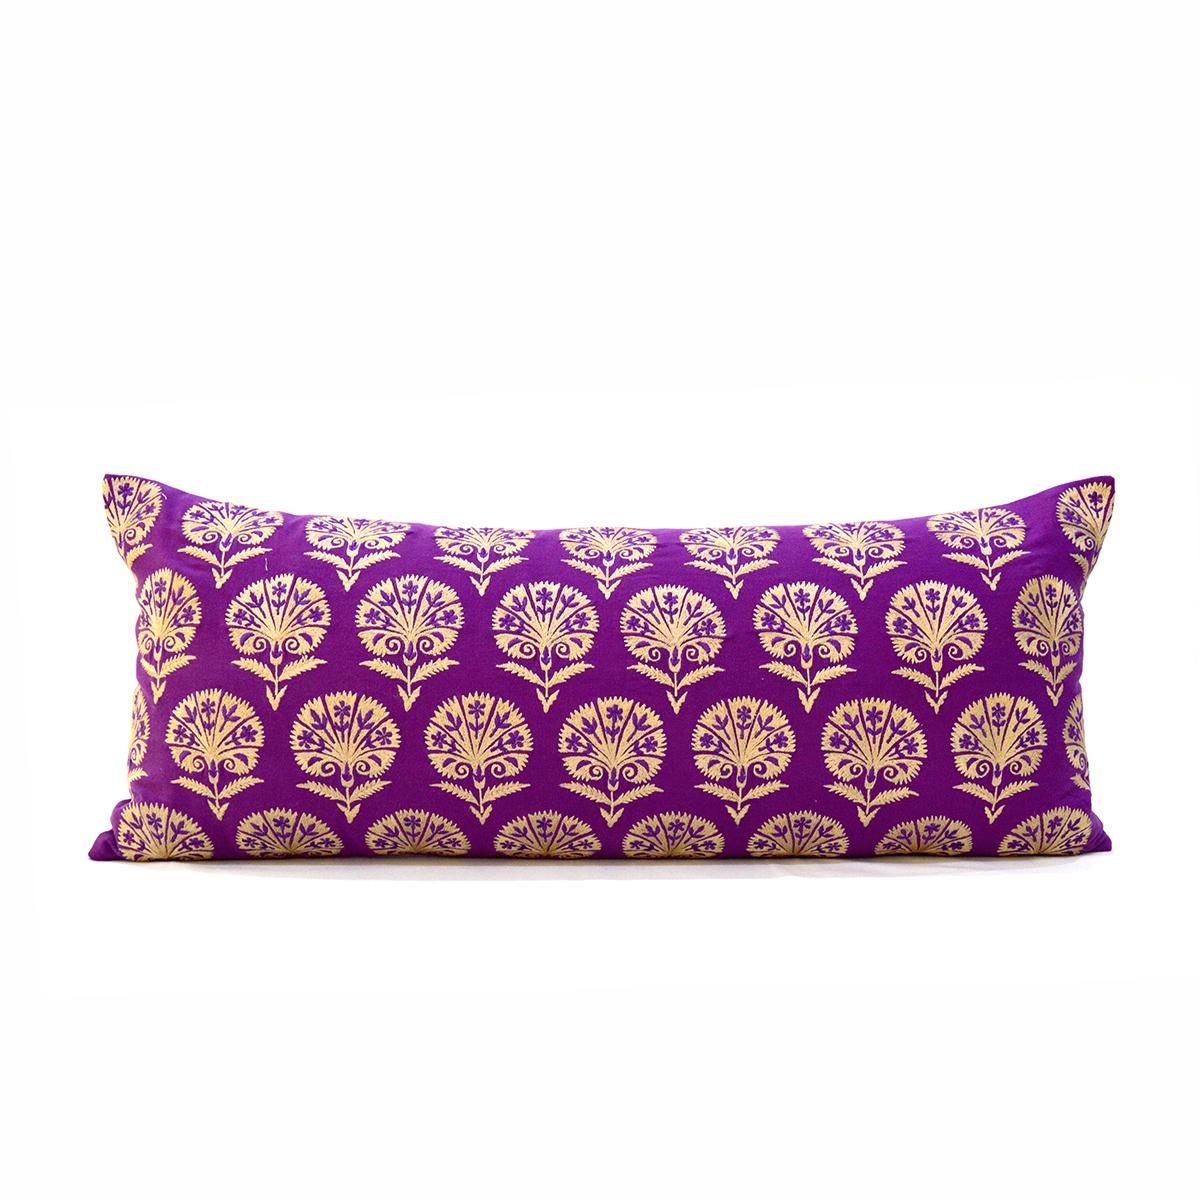 KASHIDAKAARI - Plum cotton Long Lumbar pillow cover with Suzani inspired silk embroidery, long lumbar pillow cover, sizes available